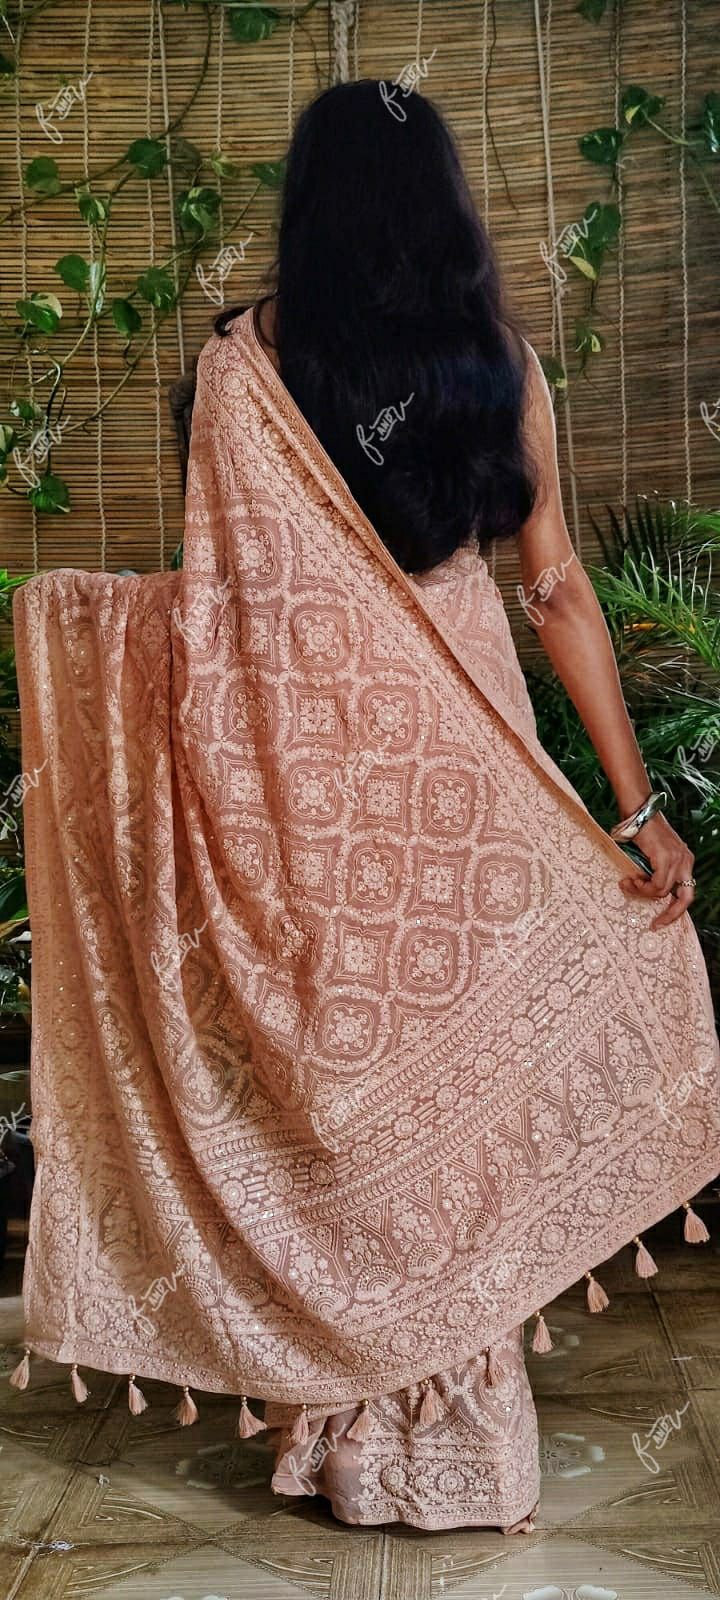 NoorJahan Chikankari saree Gorgette Sarees Indian sari